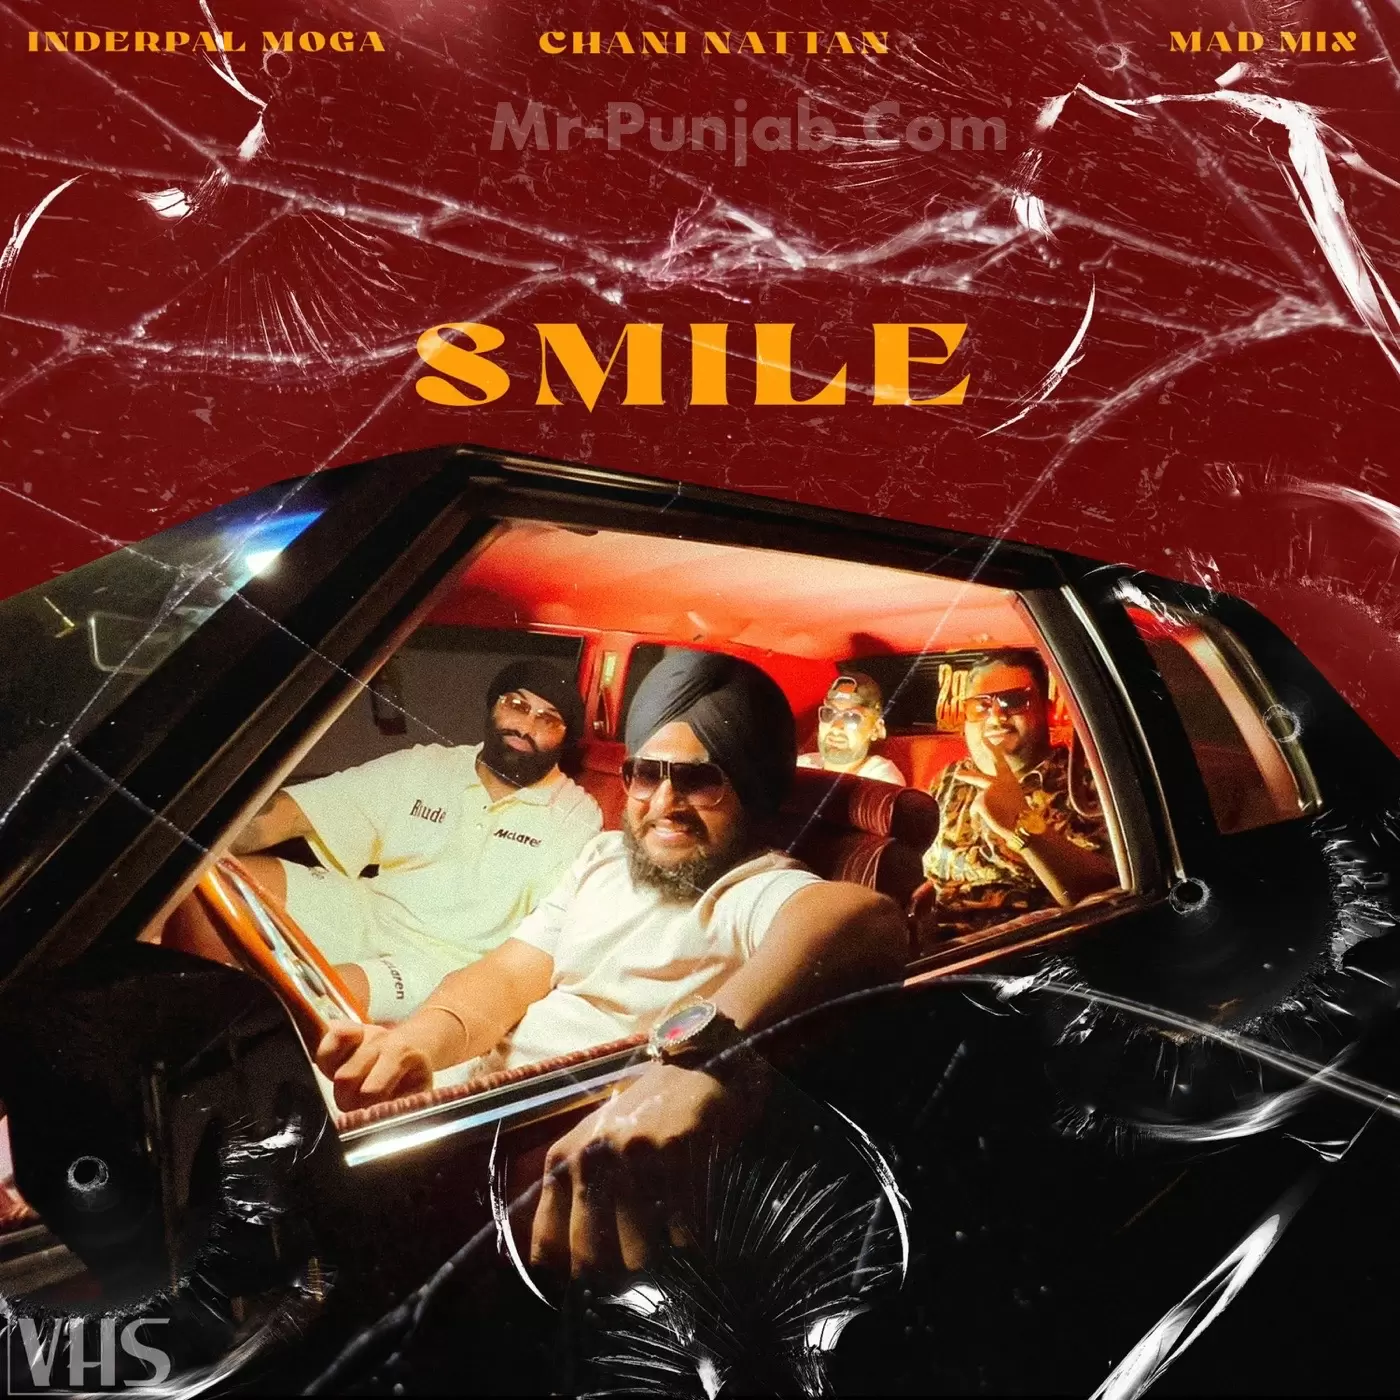 Smile Inderpal Moga Mp3 Download Song - Mr-Punjab